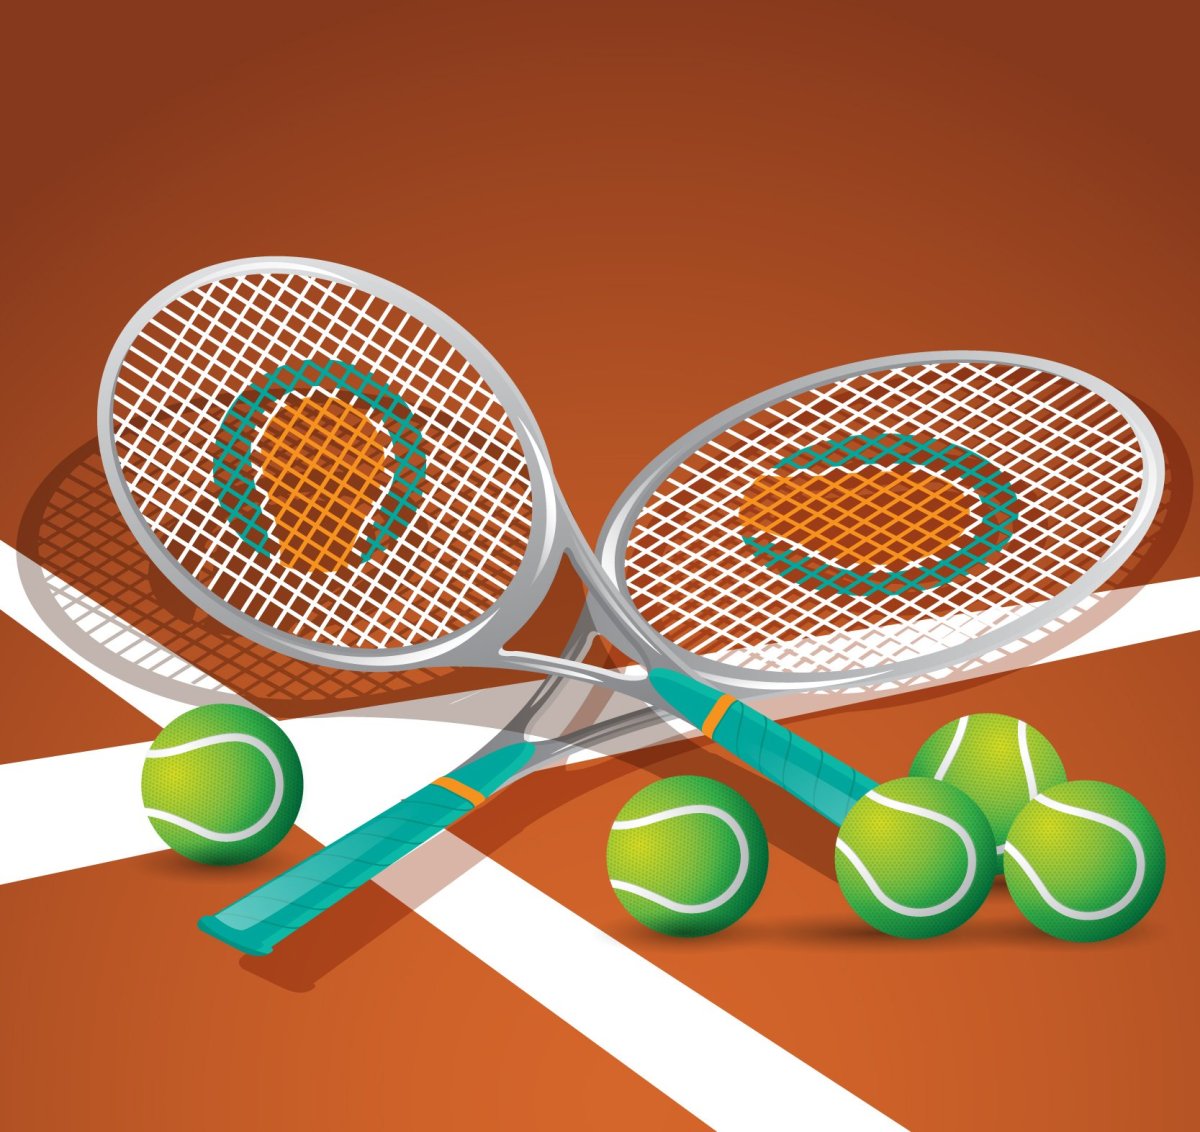 Теннис иллюстрация